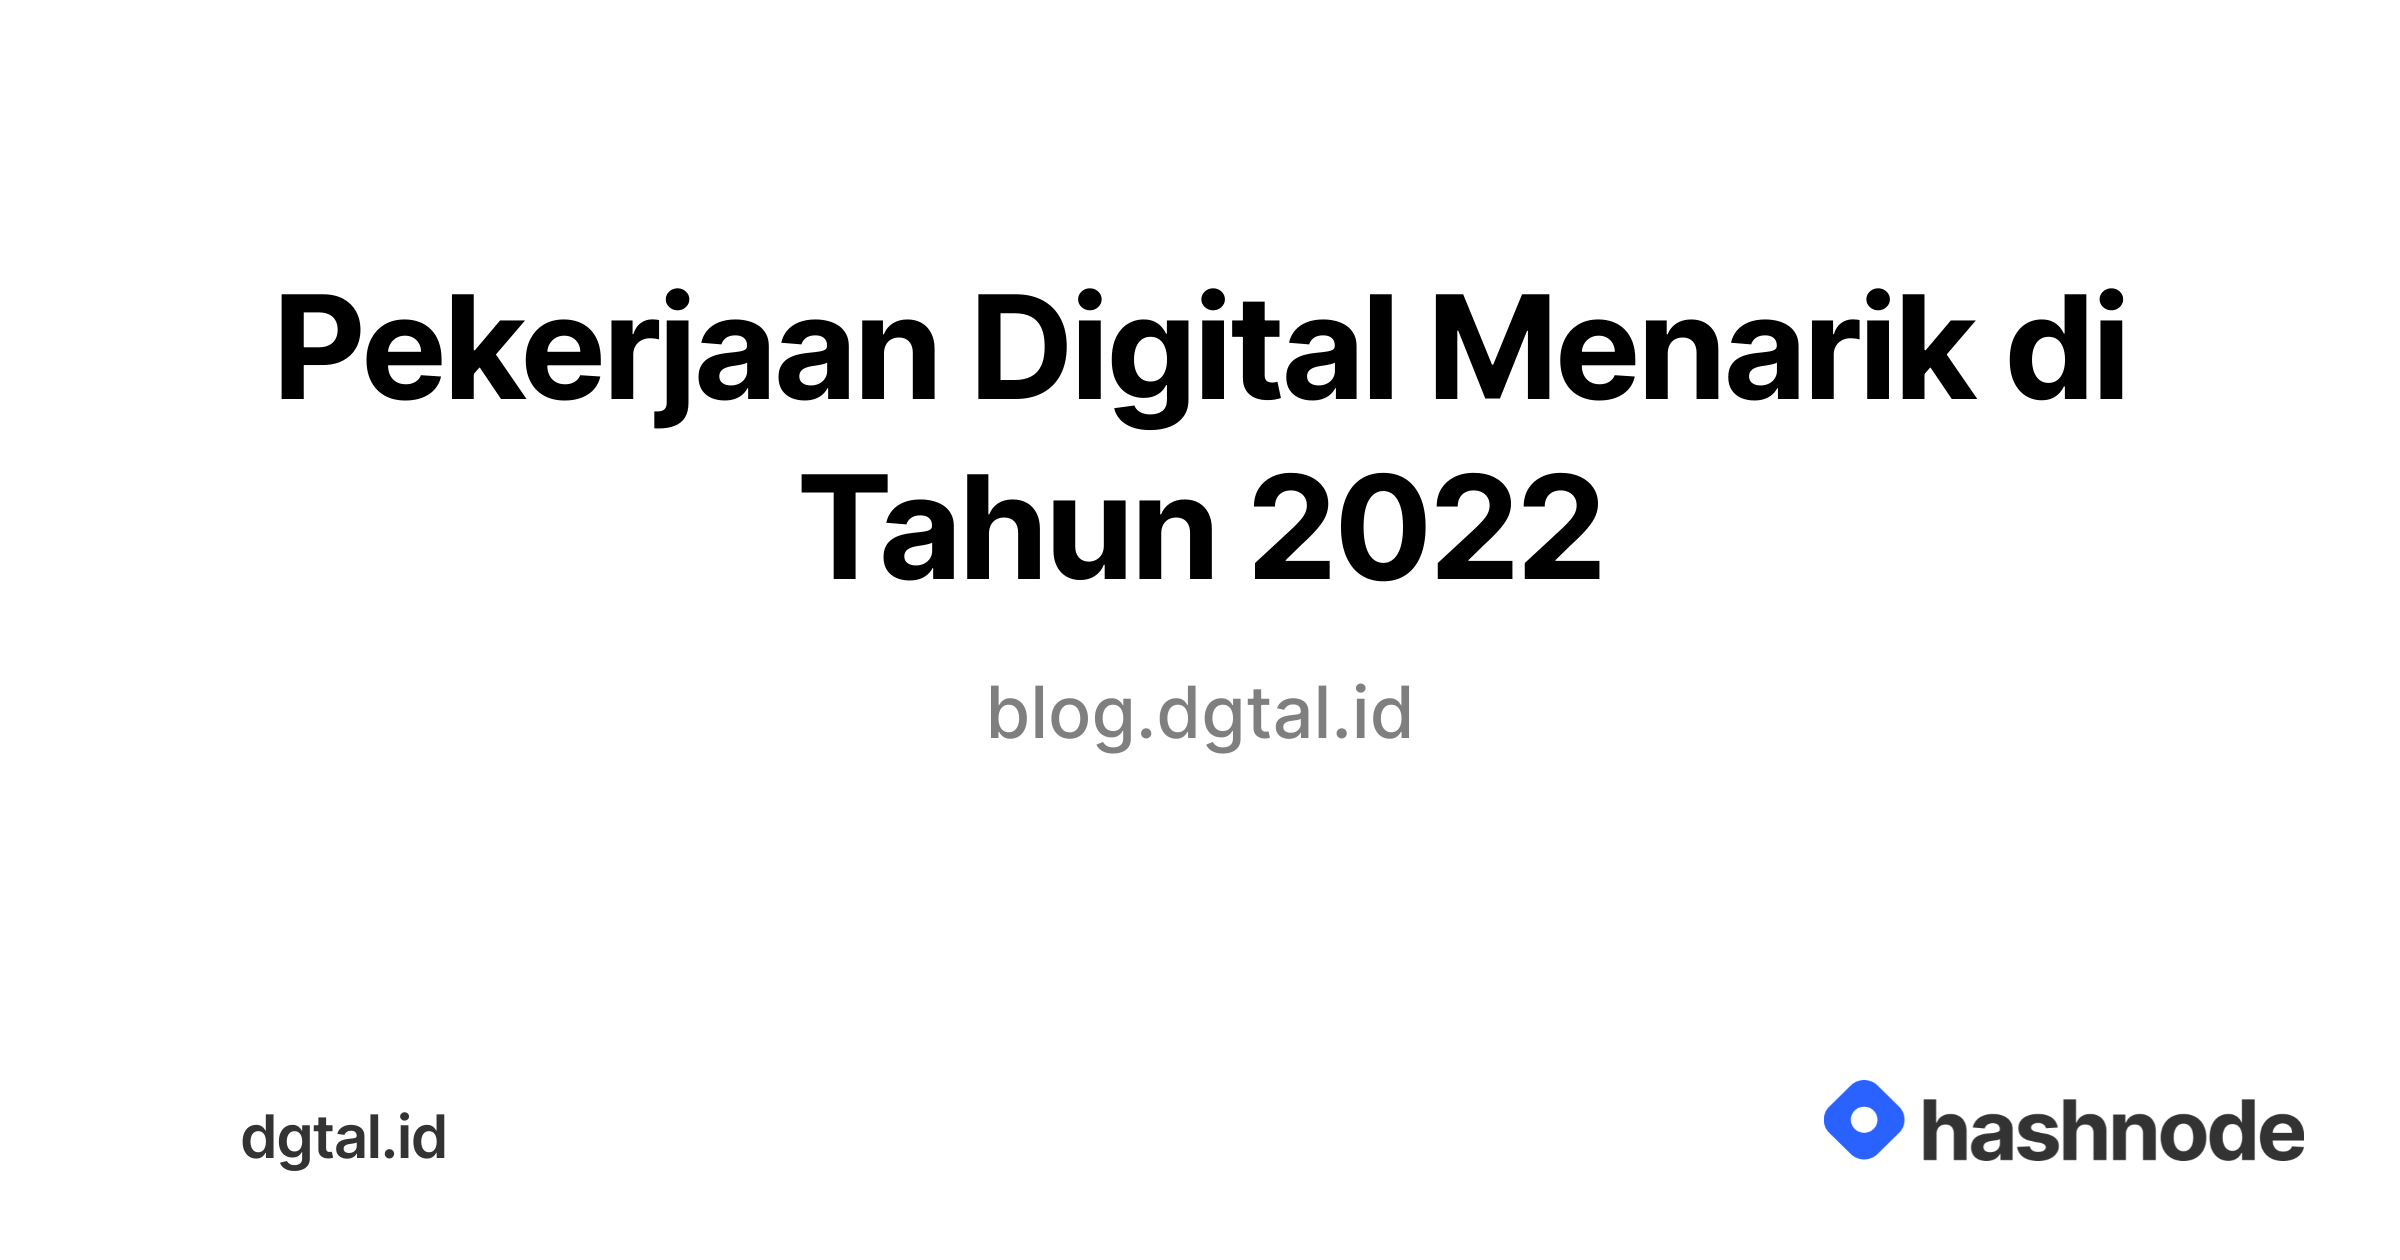 Pekerjaan Digital Menarik di Tahun 2022